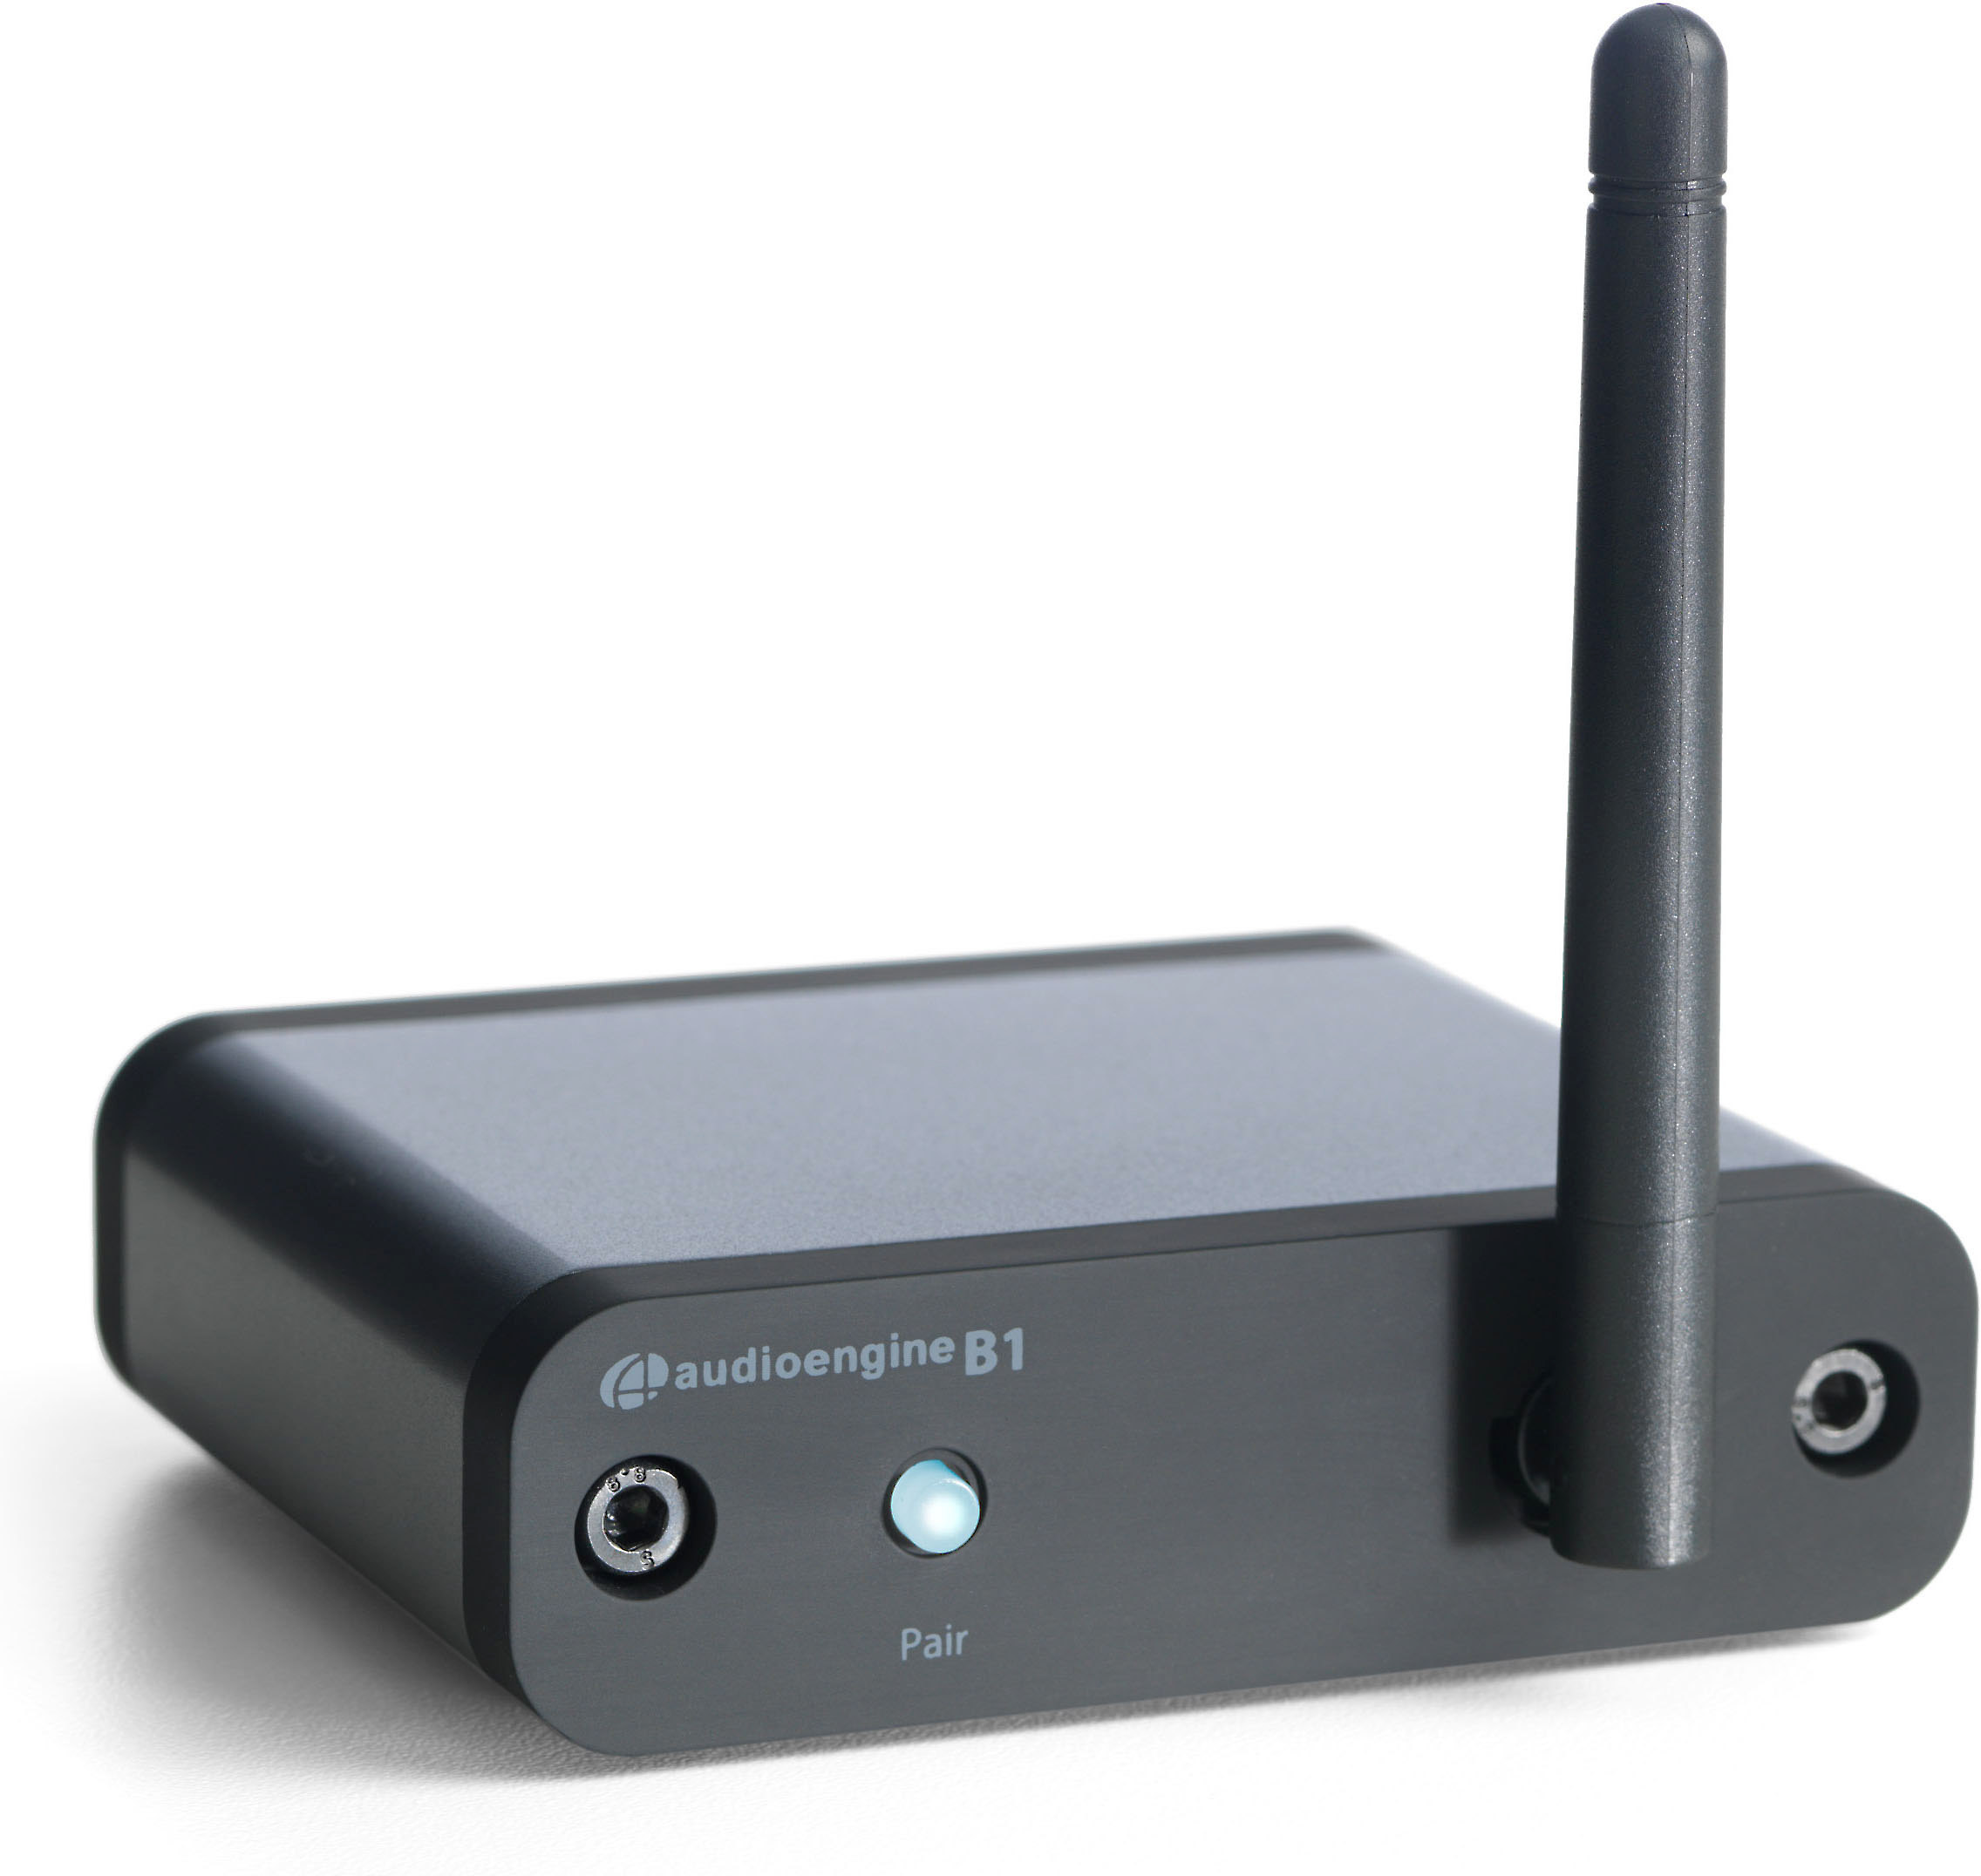 Opsplitsen Wegenbouwproces Kritisch Bluetooth Adapters for Home Stereos at Crutchfield